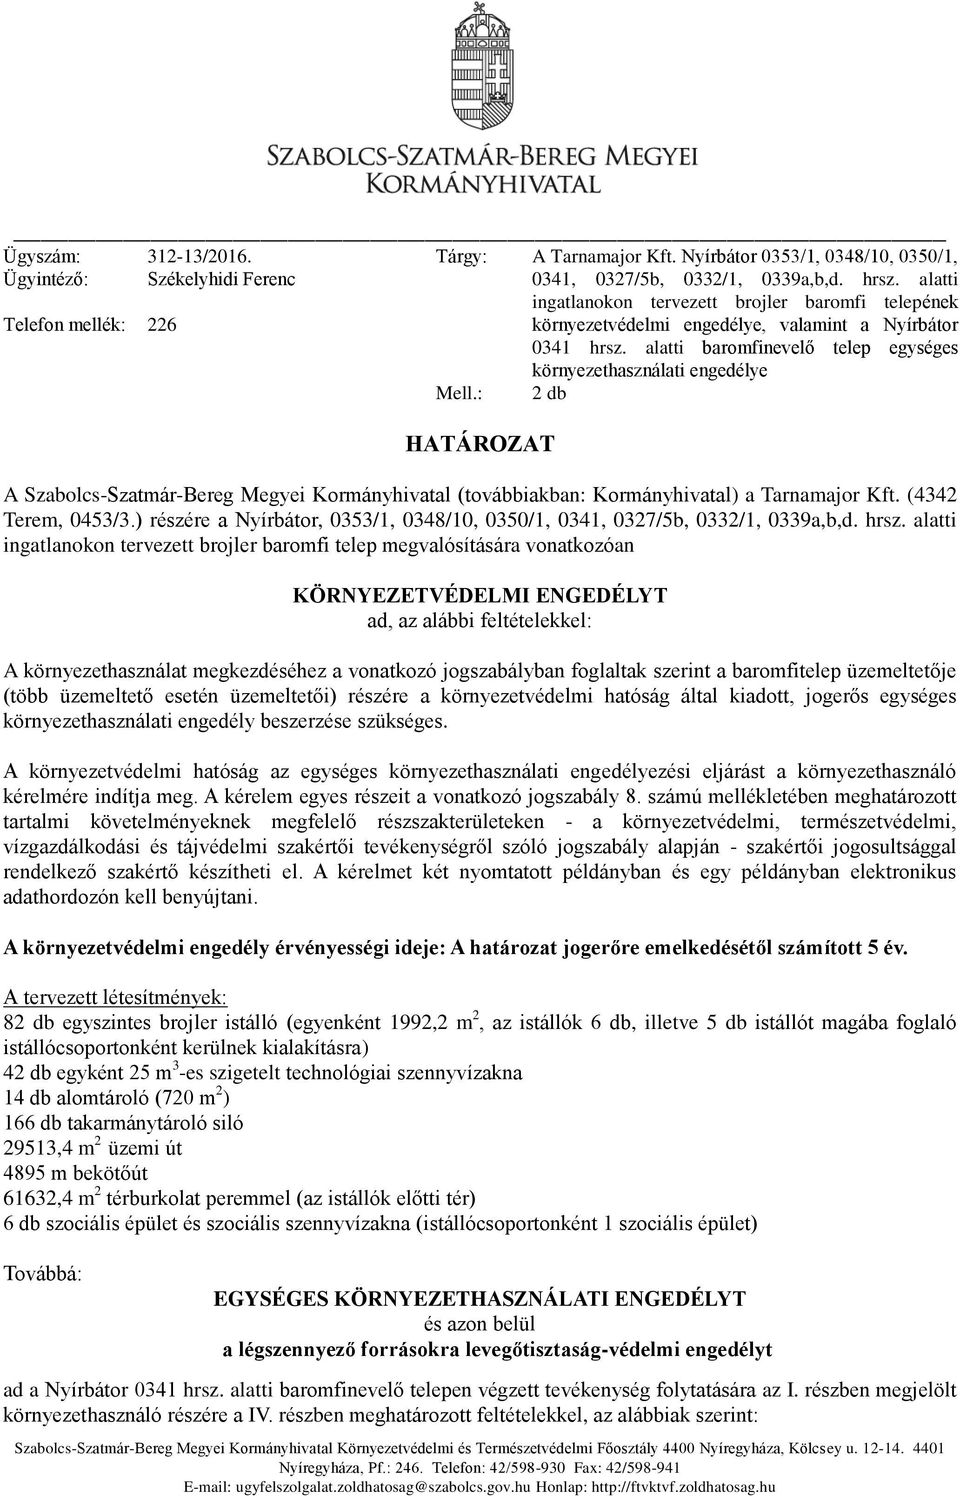 alatti baromfinevelő telep egységes környezethasználati engedélye 2 db A Szabolcs-Szatmár-Bereg Megyei Kormányhivatal (továbbiakban: Kormányhivatal) a Tarnamajor Kft. (4342 Terem, 0453/3.